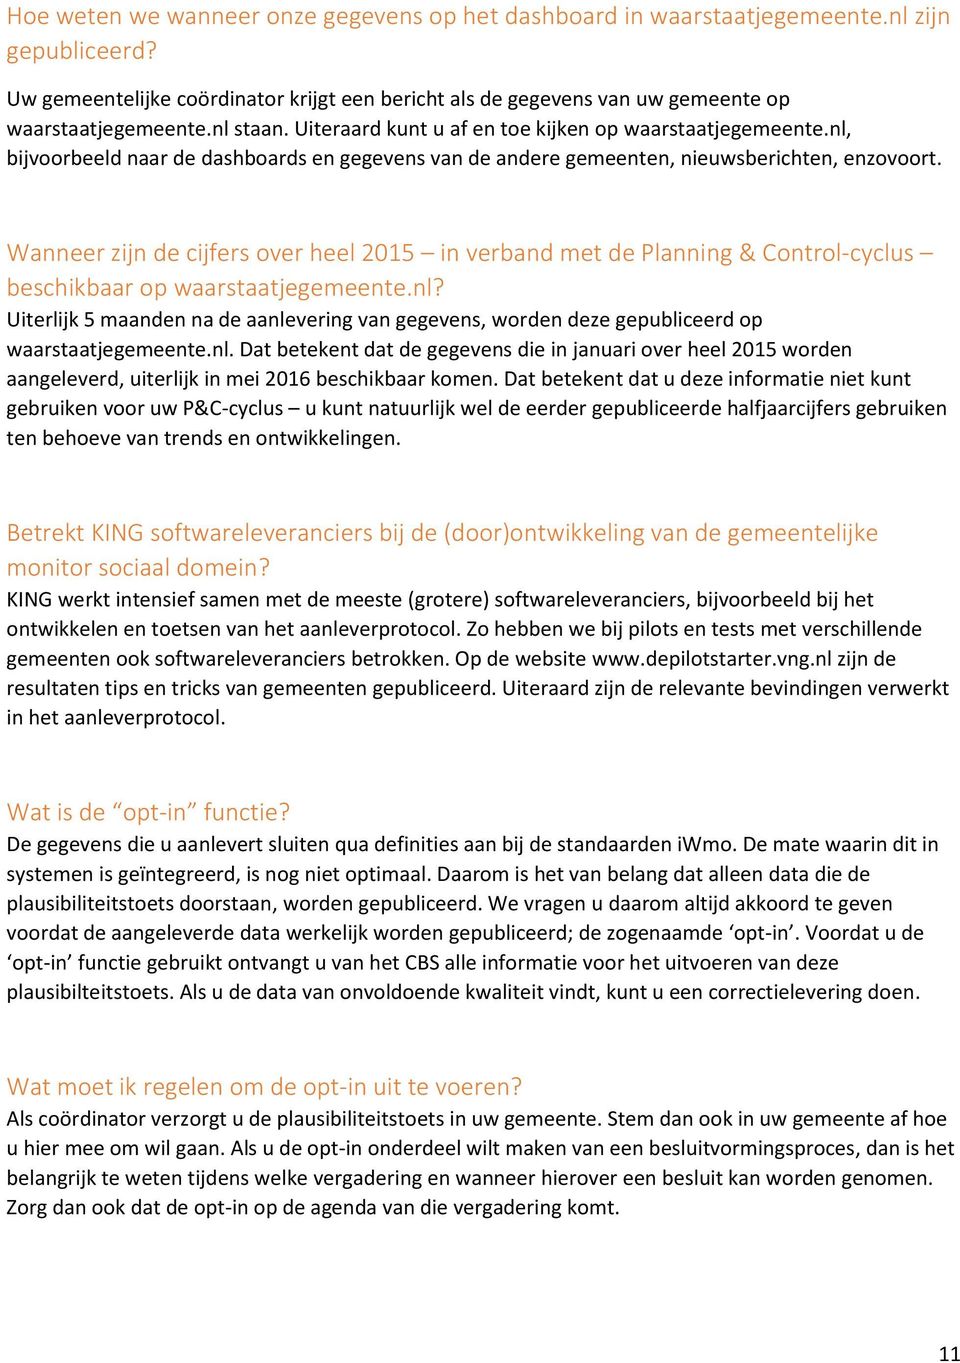 Wanneer zijn de cijfers over heel 2015 in verband met de Planning & Control-cyclus beschikbaar op waarstaatjegemeente.nl?